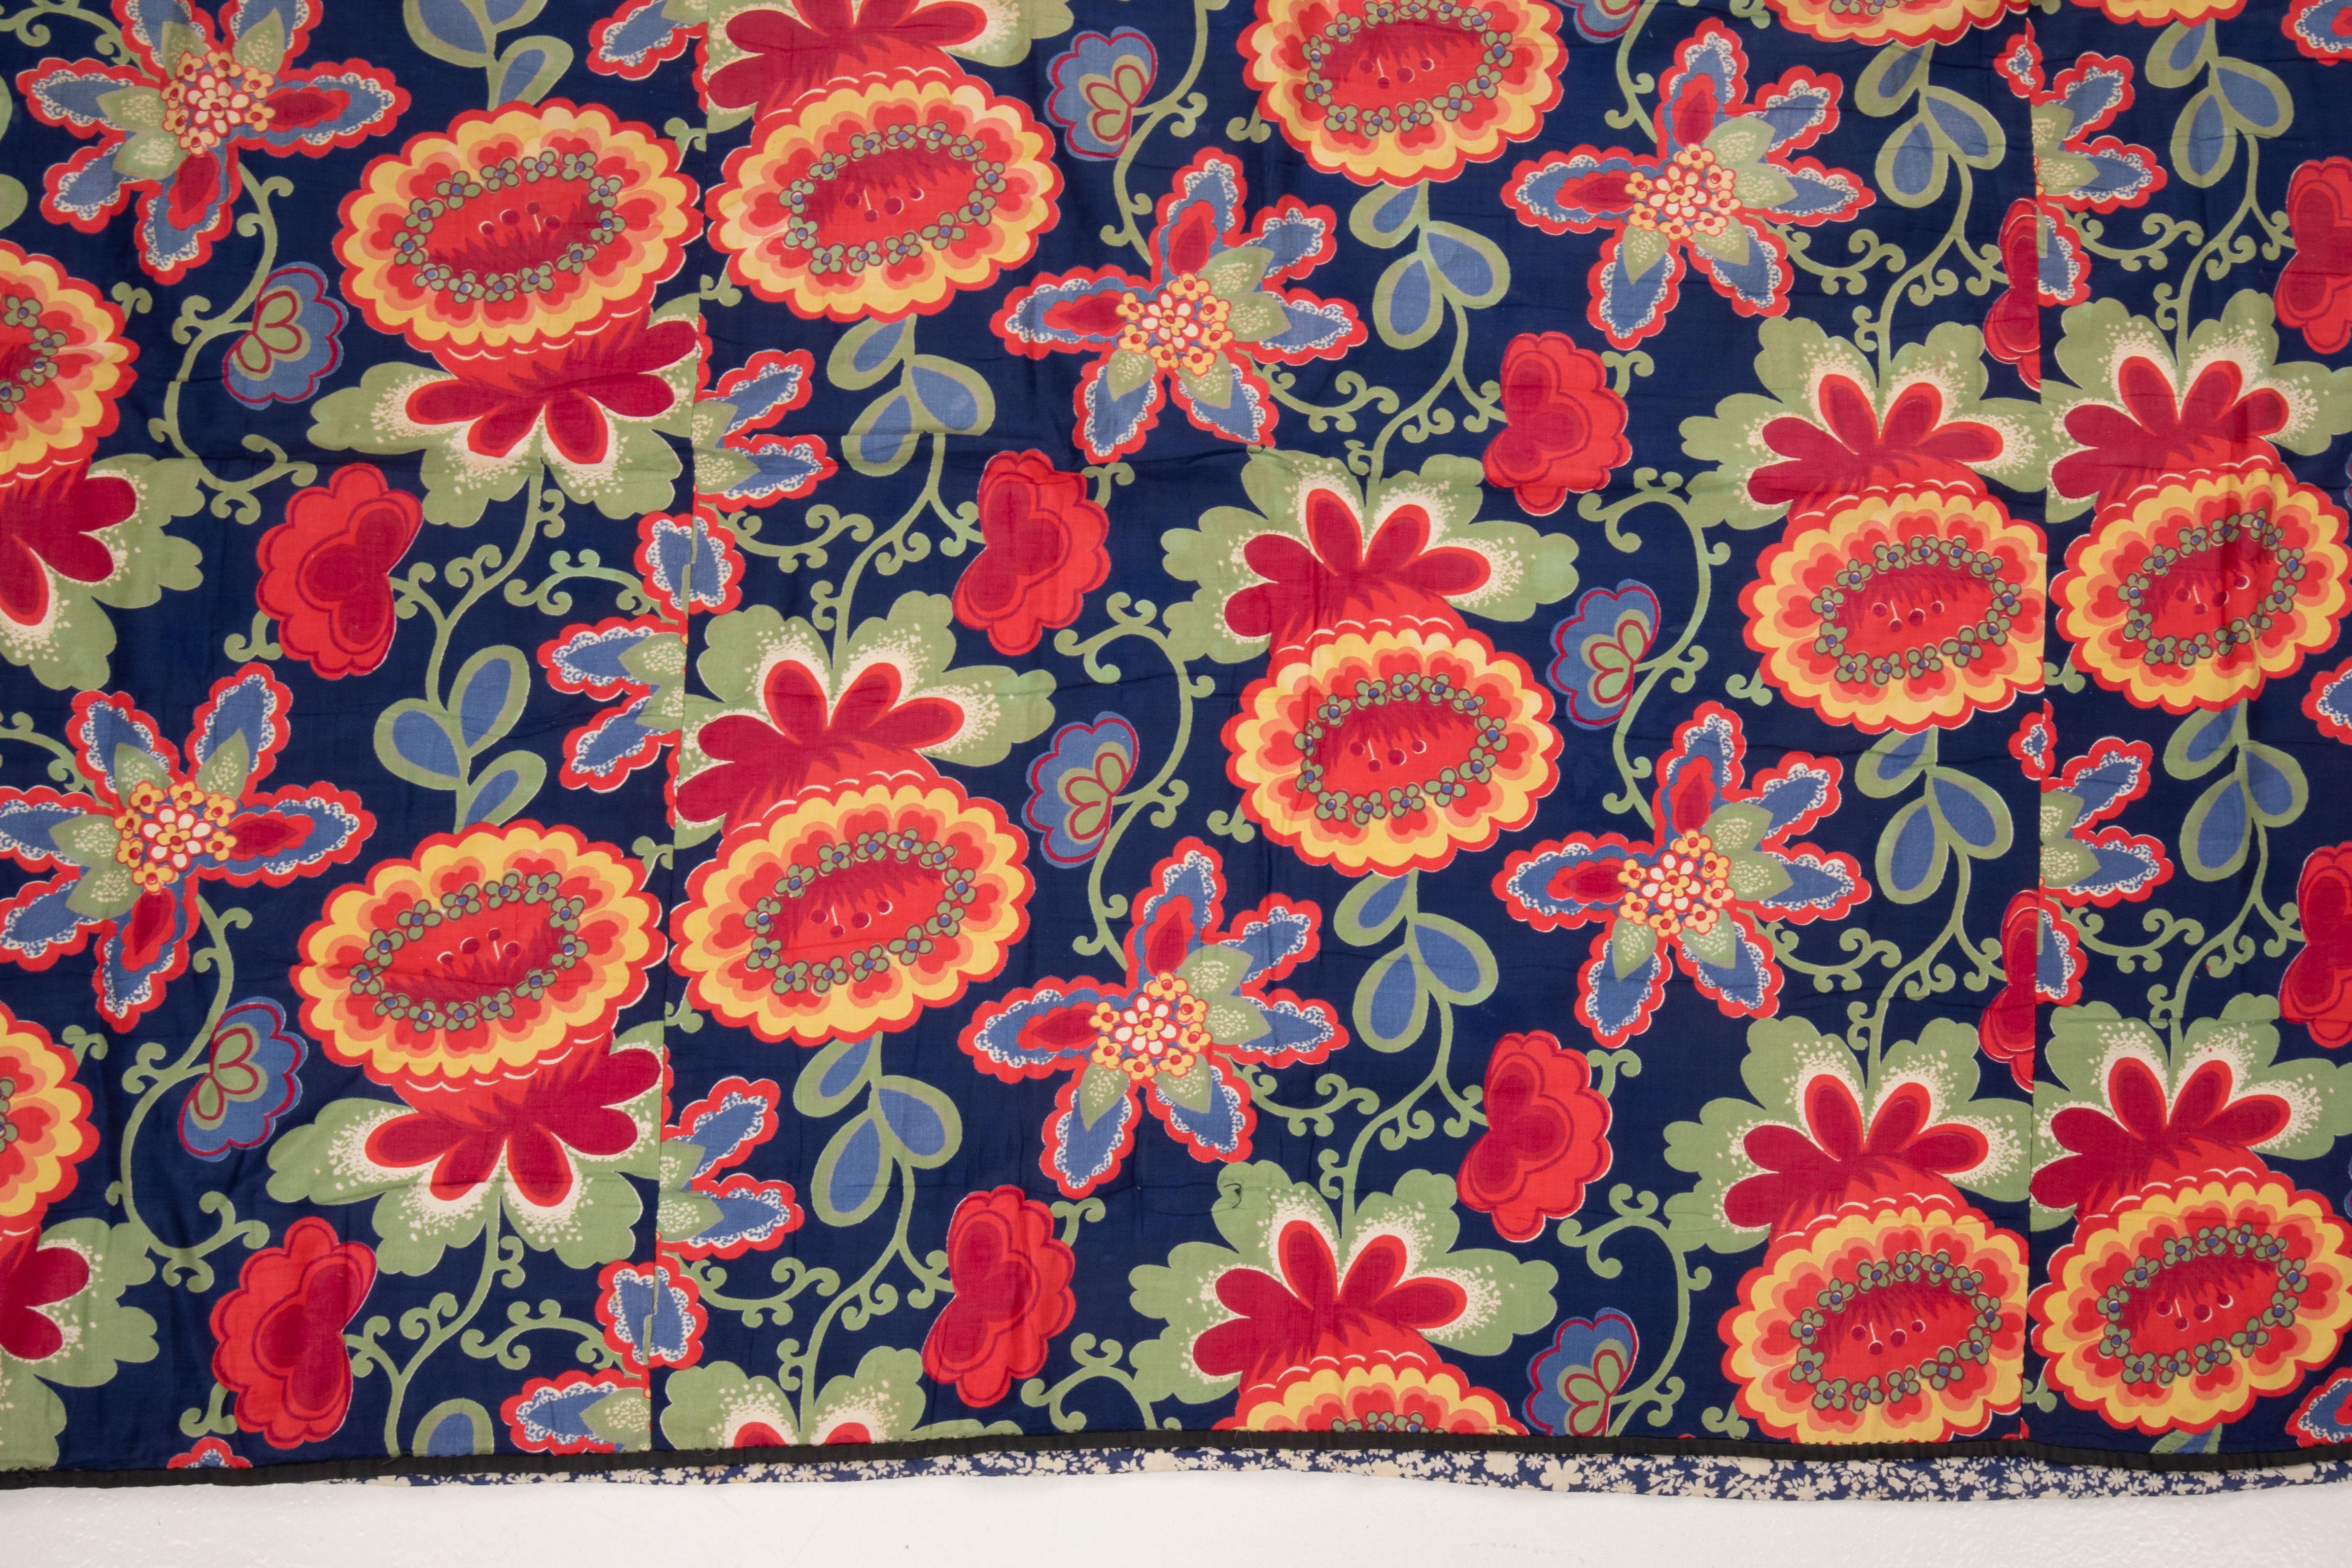 Les textiles russes imprimés au rouleau du milieu du XXe siècle occupaient une place à part sur le marché d'Asie centrale, incarnant une fusion vibrante de l'expression artistique et de la fonctionnalité utilitaire. Ces textiles se caractérisent par